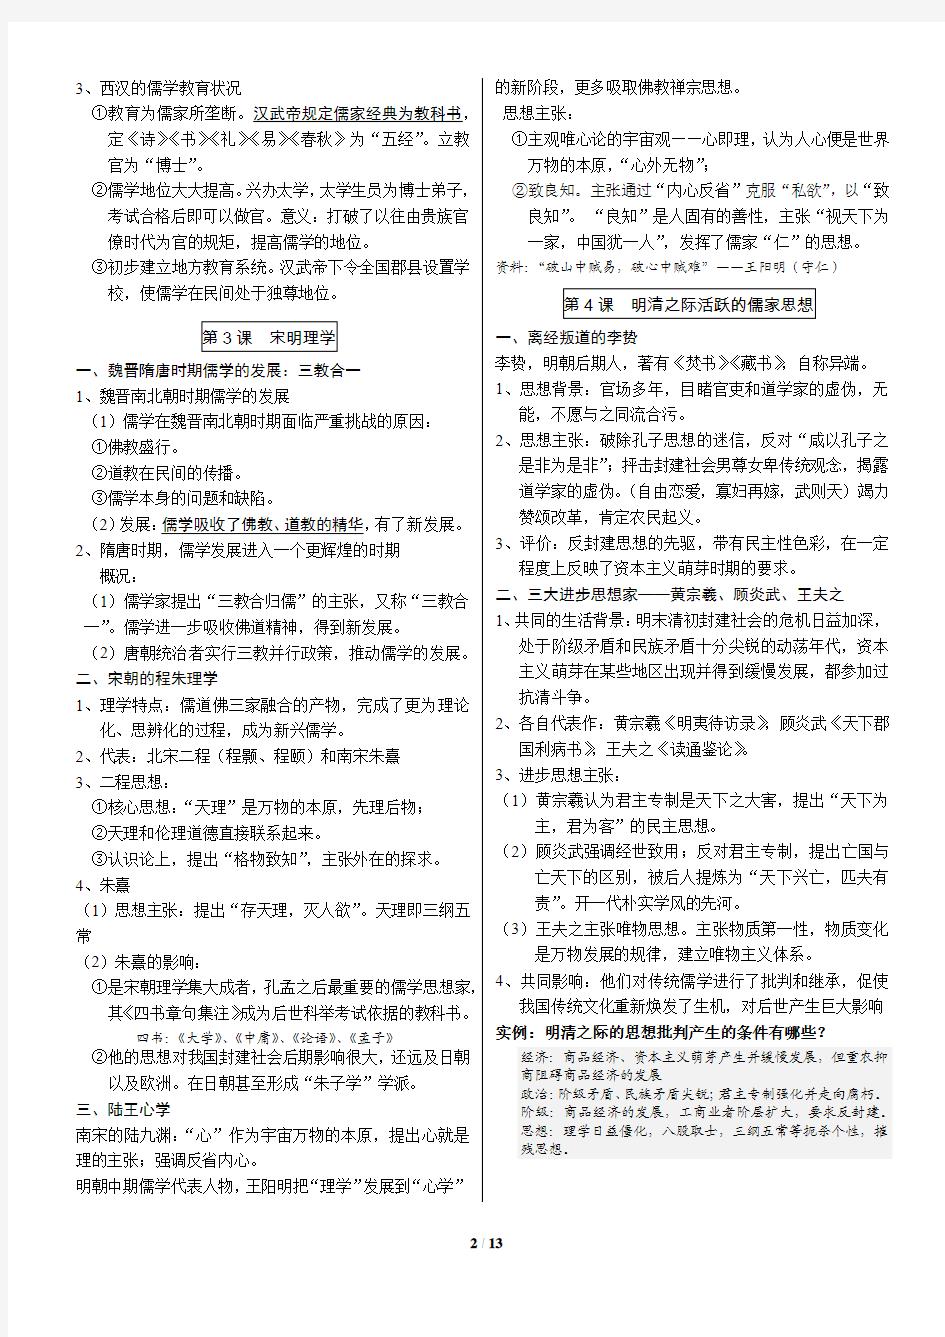 高二历史必修3 中国部分 复习手册 考点知识梳理 打印版